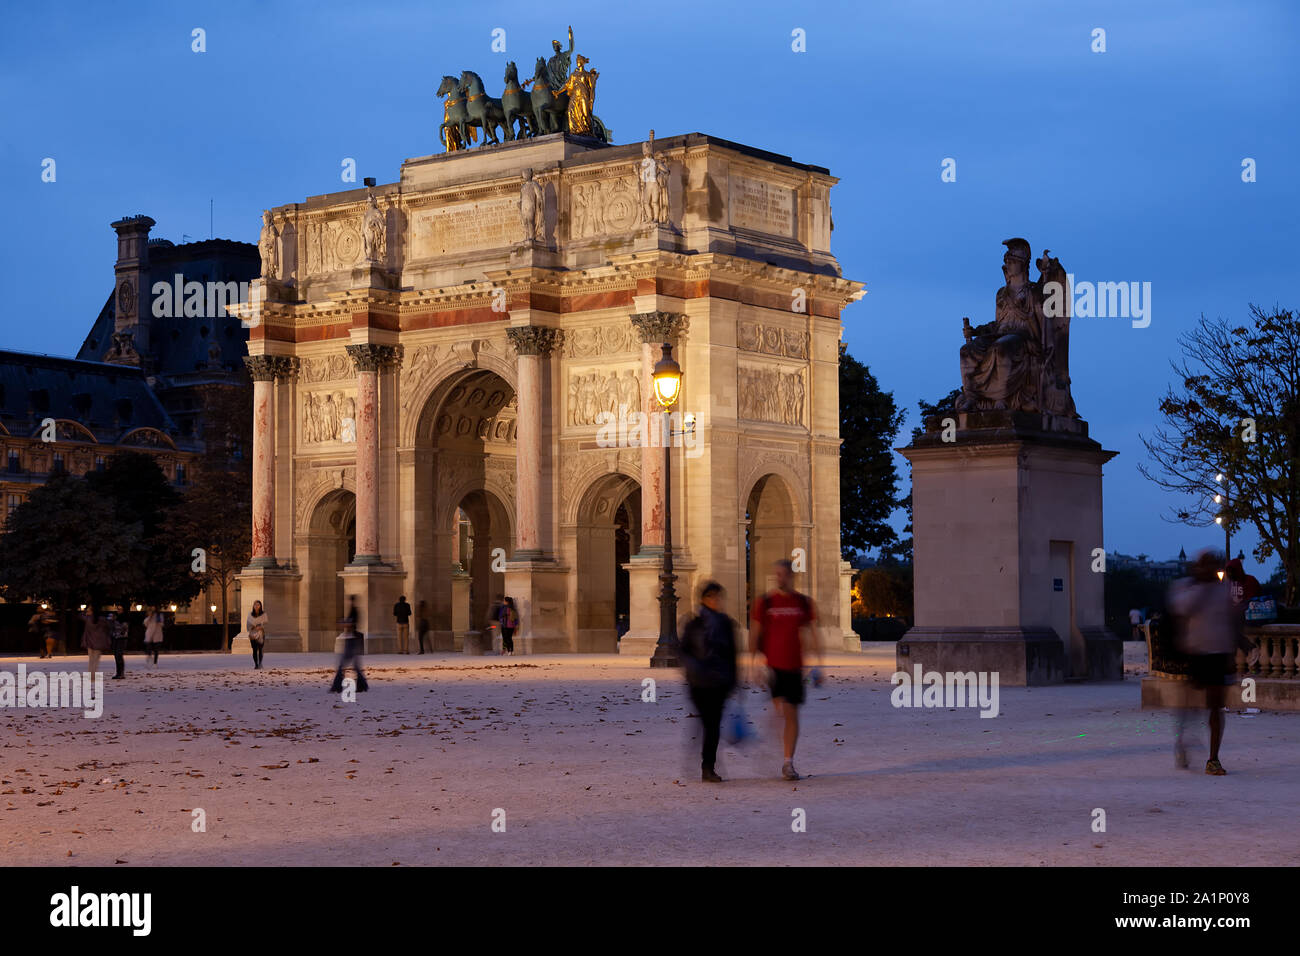 L'Arc de triomphe du Carrousel en bas, est un arc de triomphe à Paris, situé dans la place du Carrousel Banque D'Images